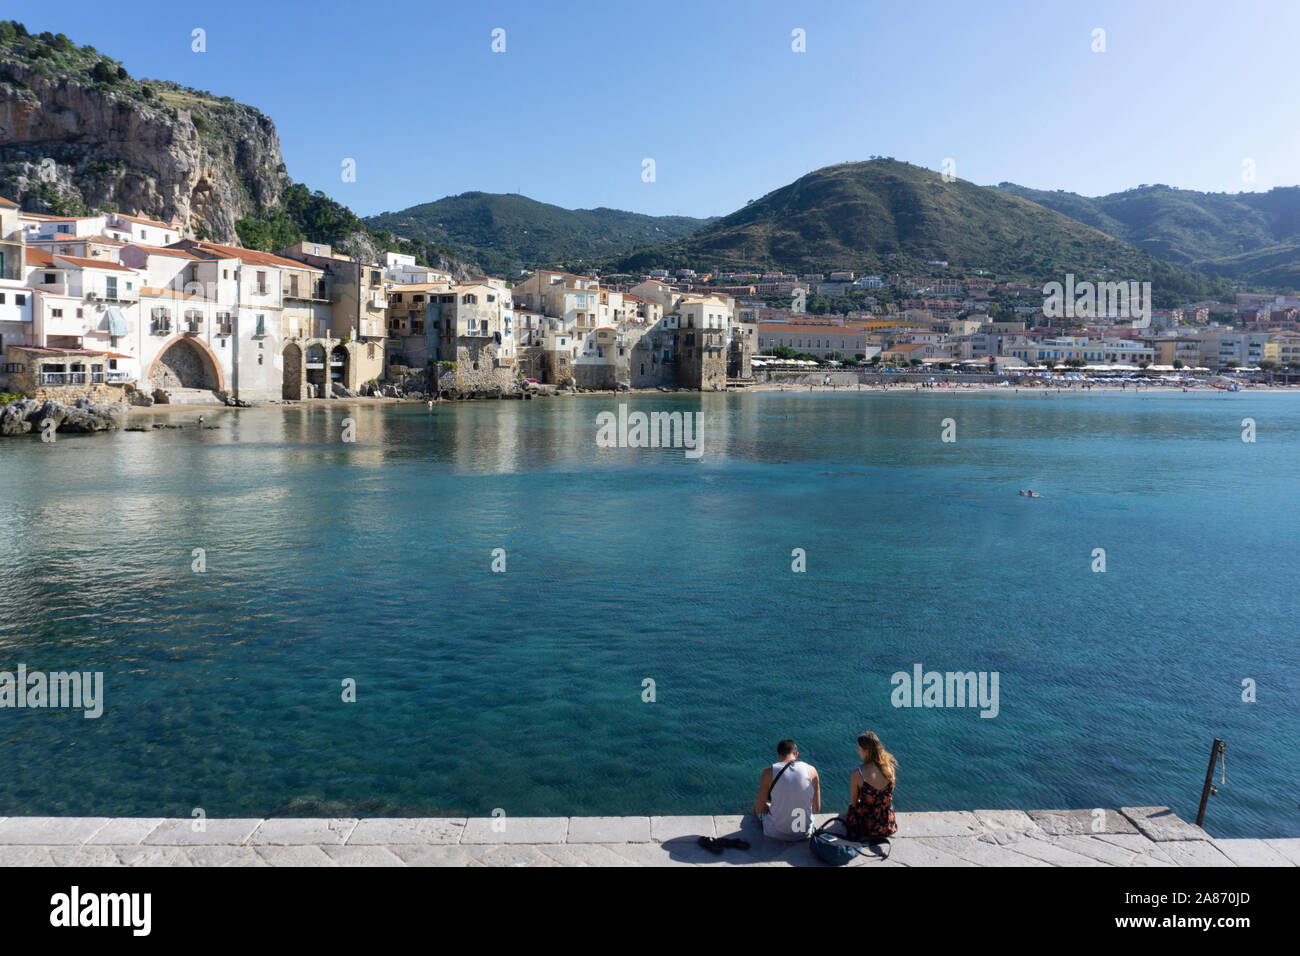 Un couple assis sur la jetée en face de la vieille ville de Cefalú, Sicile, Italie, avec le rocher de la Rocca qui pèse sur la ville. Banque D'Images